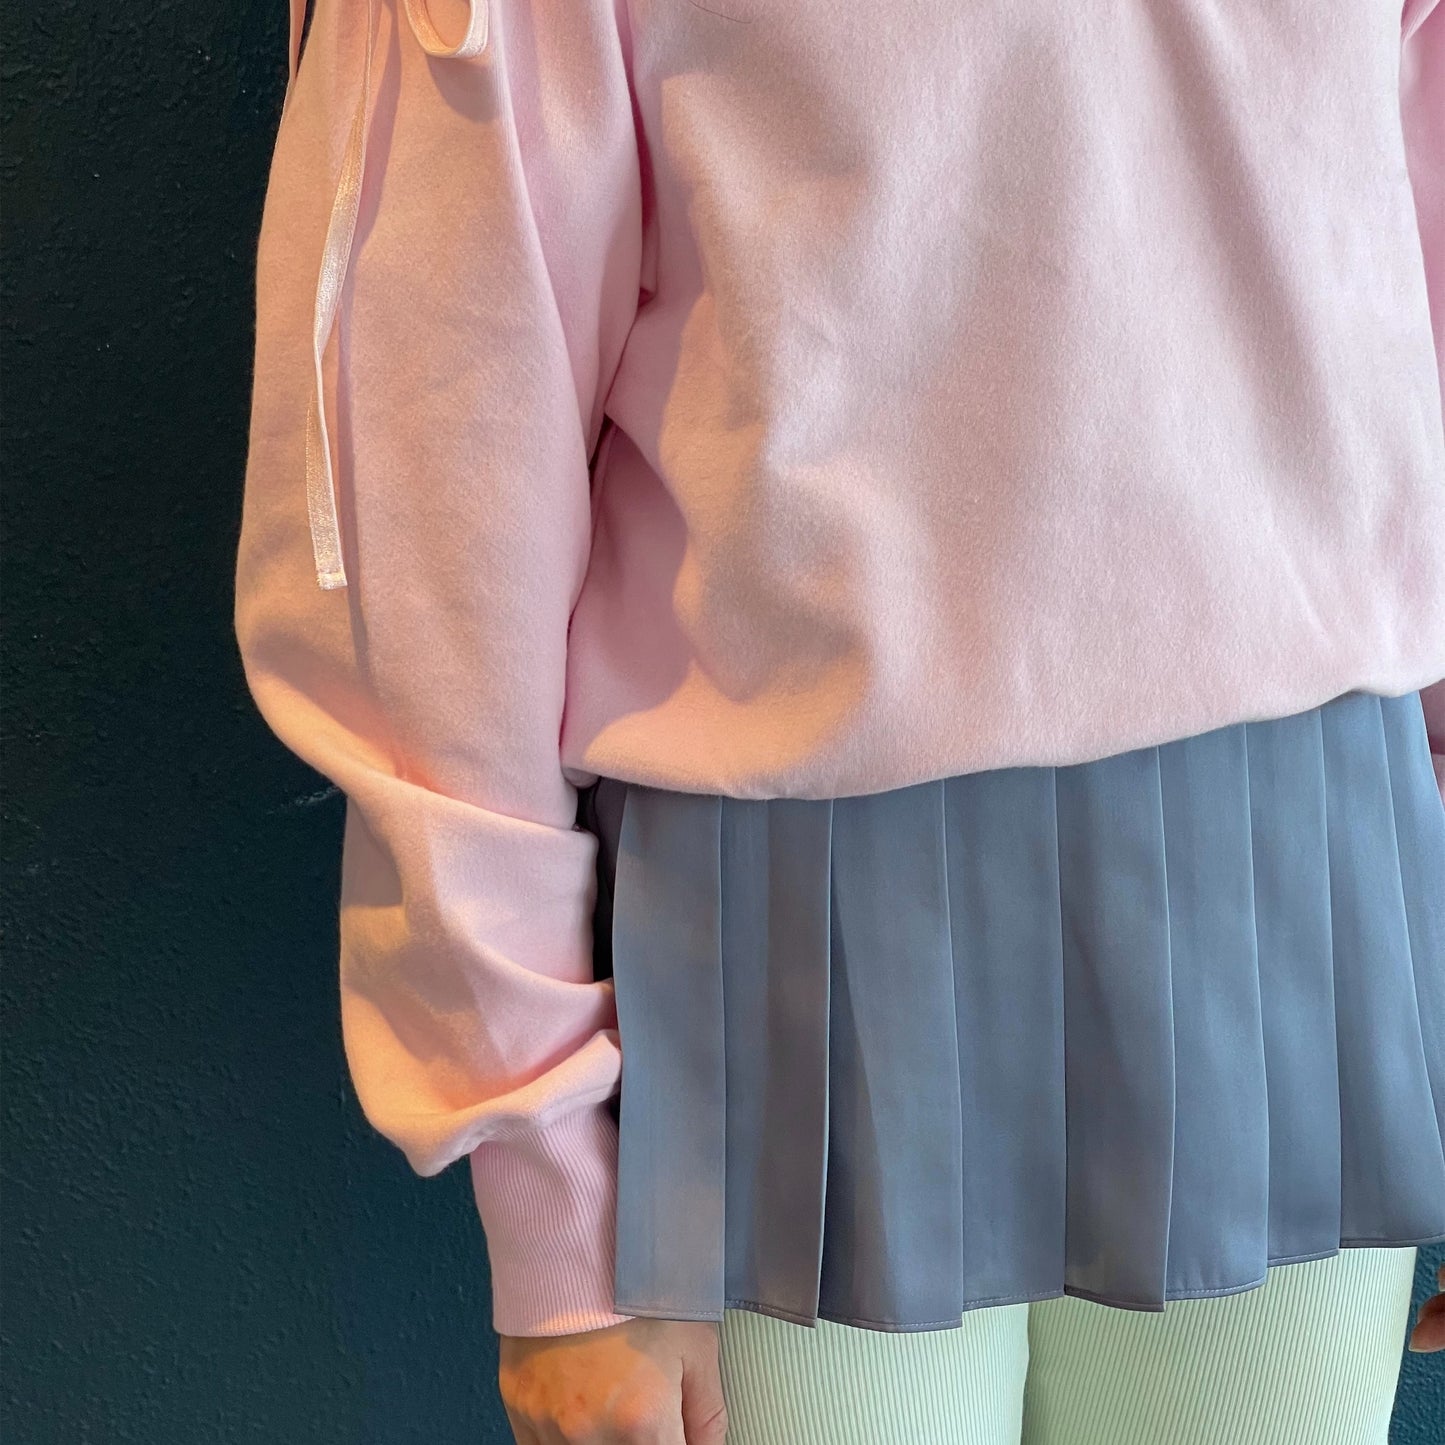 Mari ballerina sweatshirt / Baby pink / カッティングスウェット